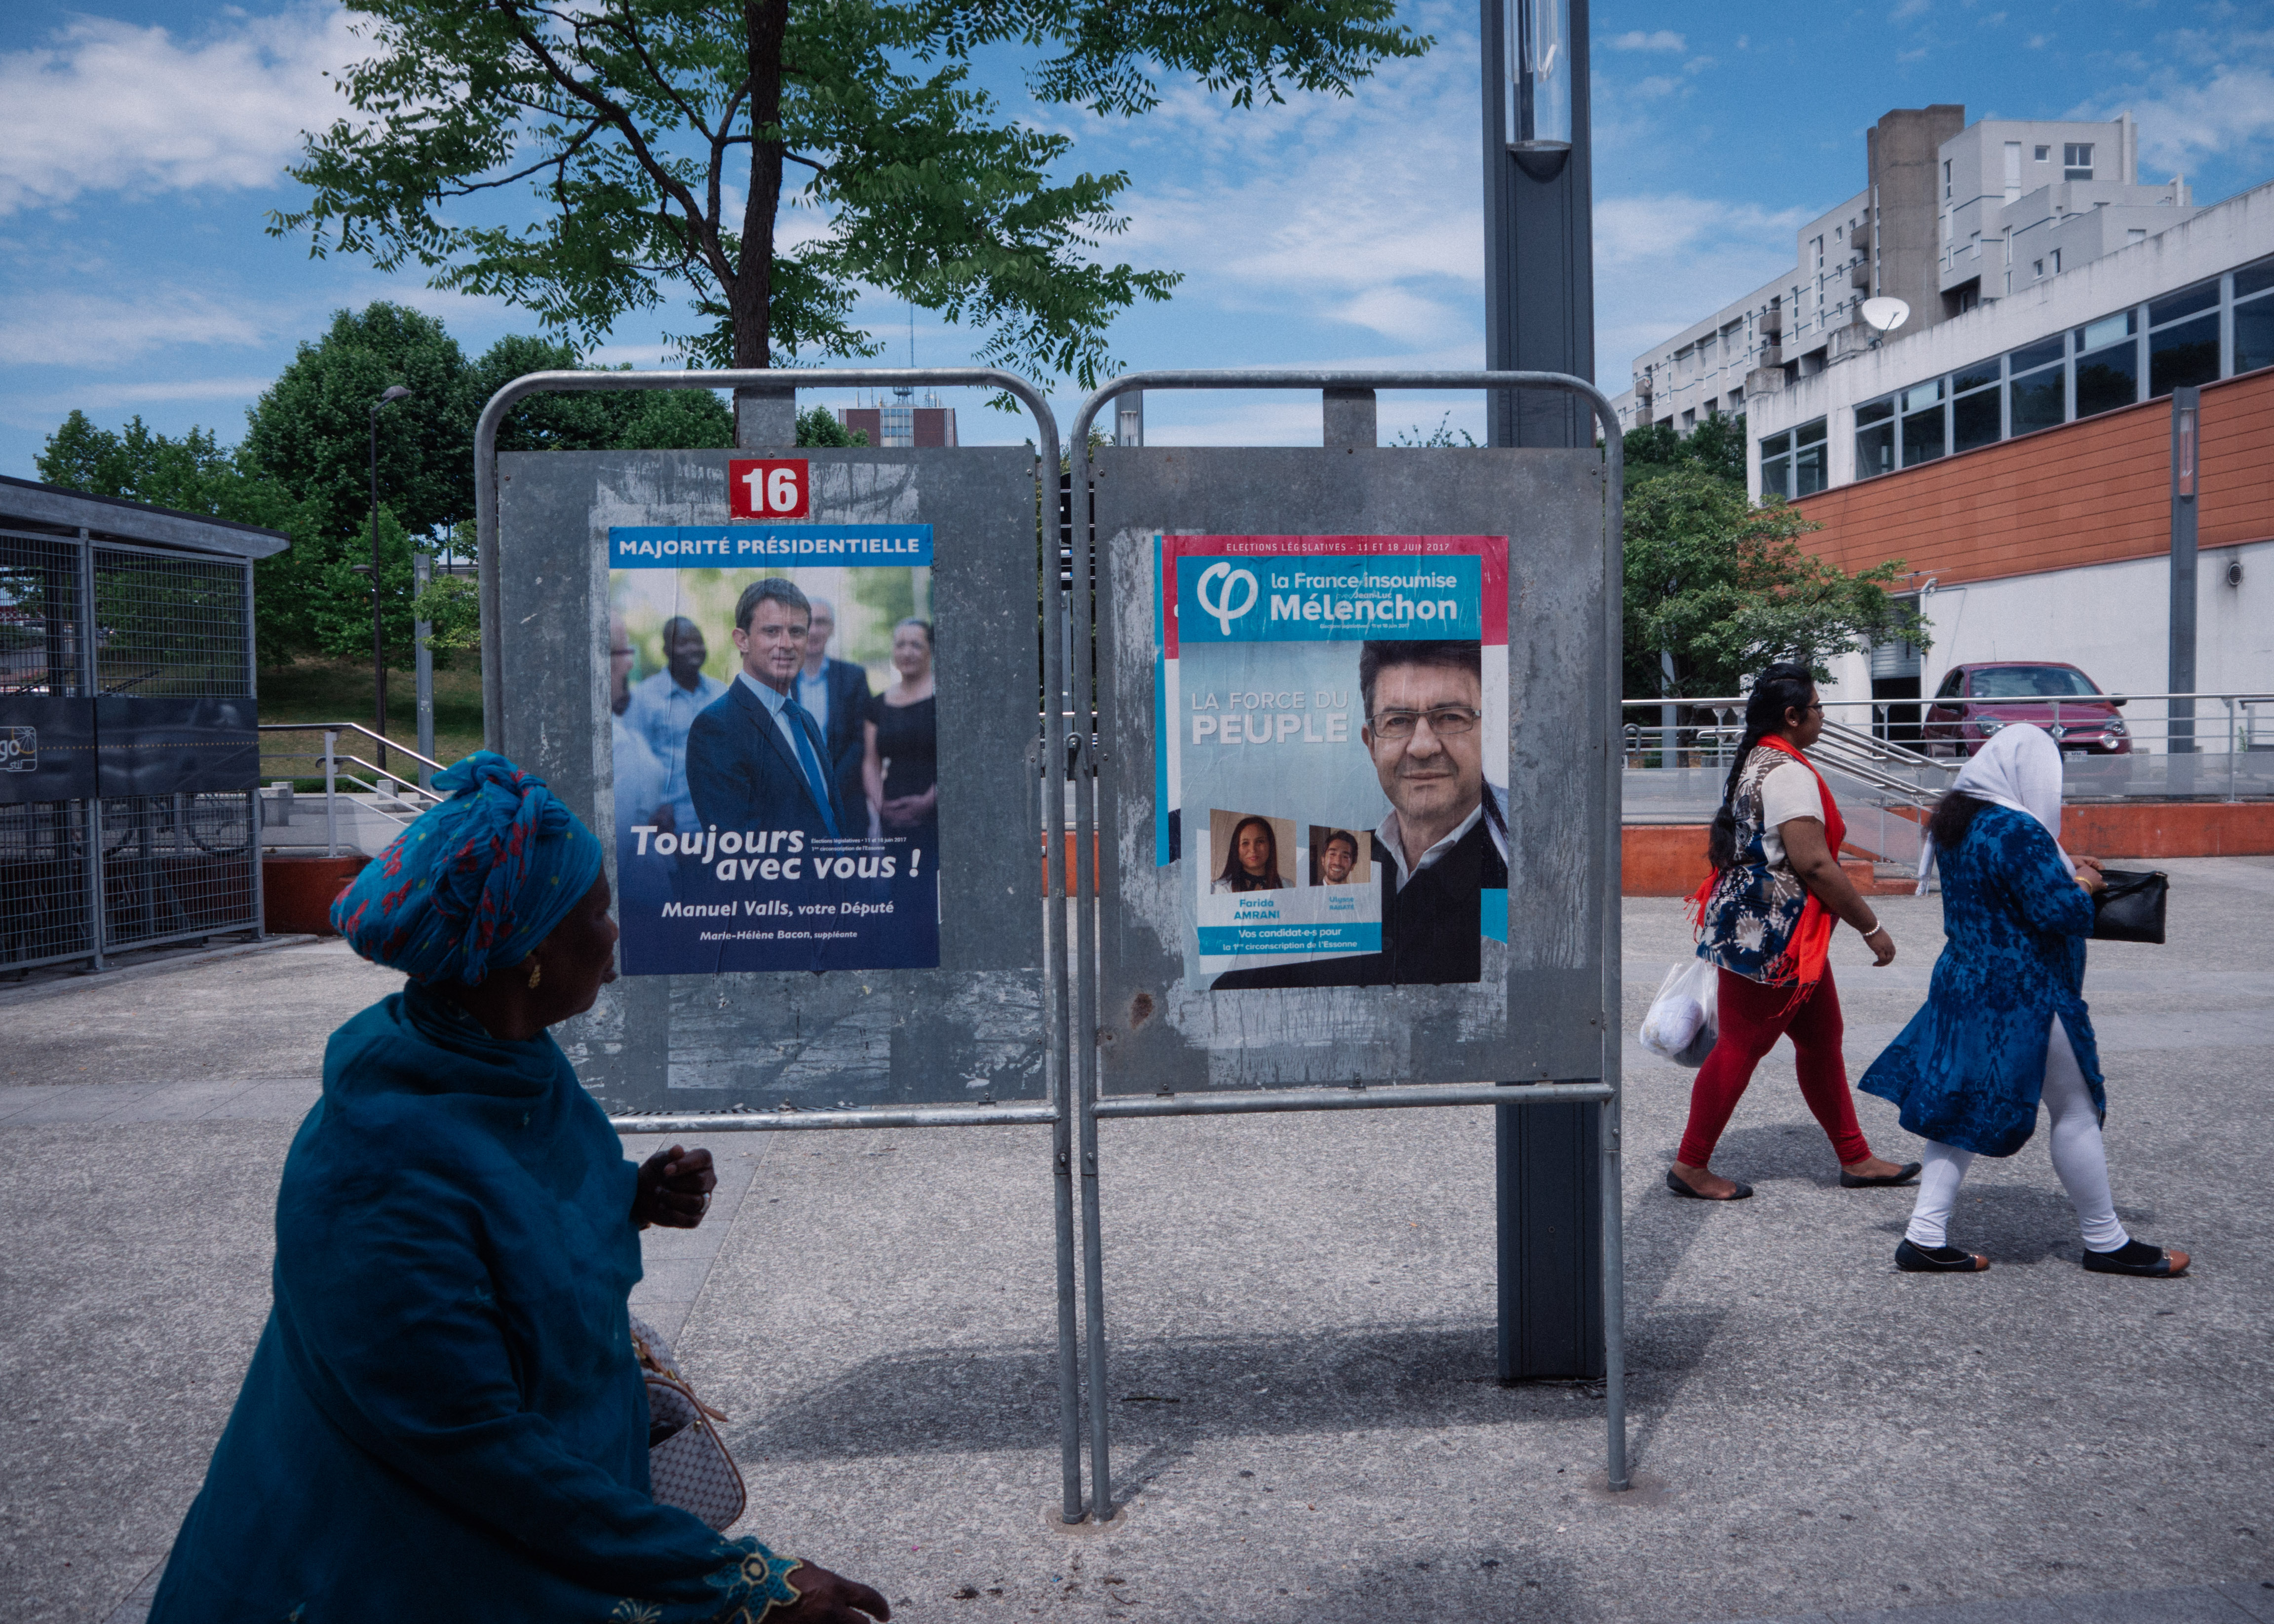 A Evry, les Insoumis dénoncent le «49-3 électoral» de Valls - Mediapart